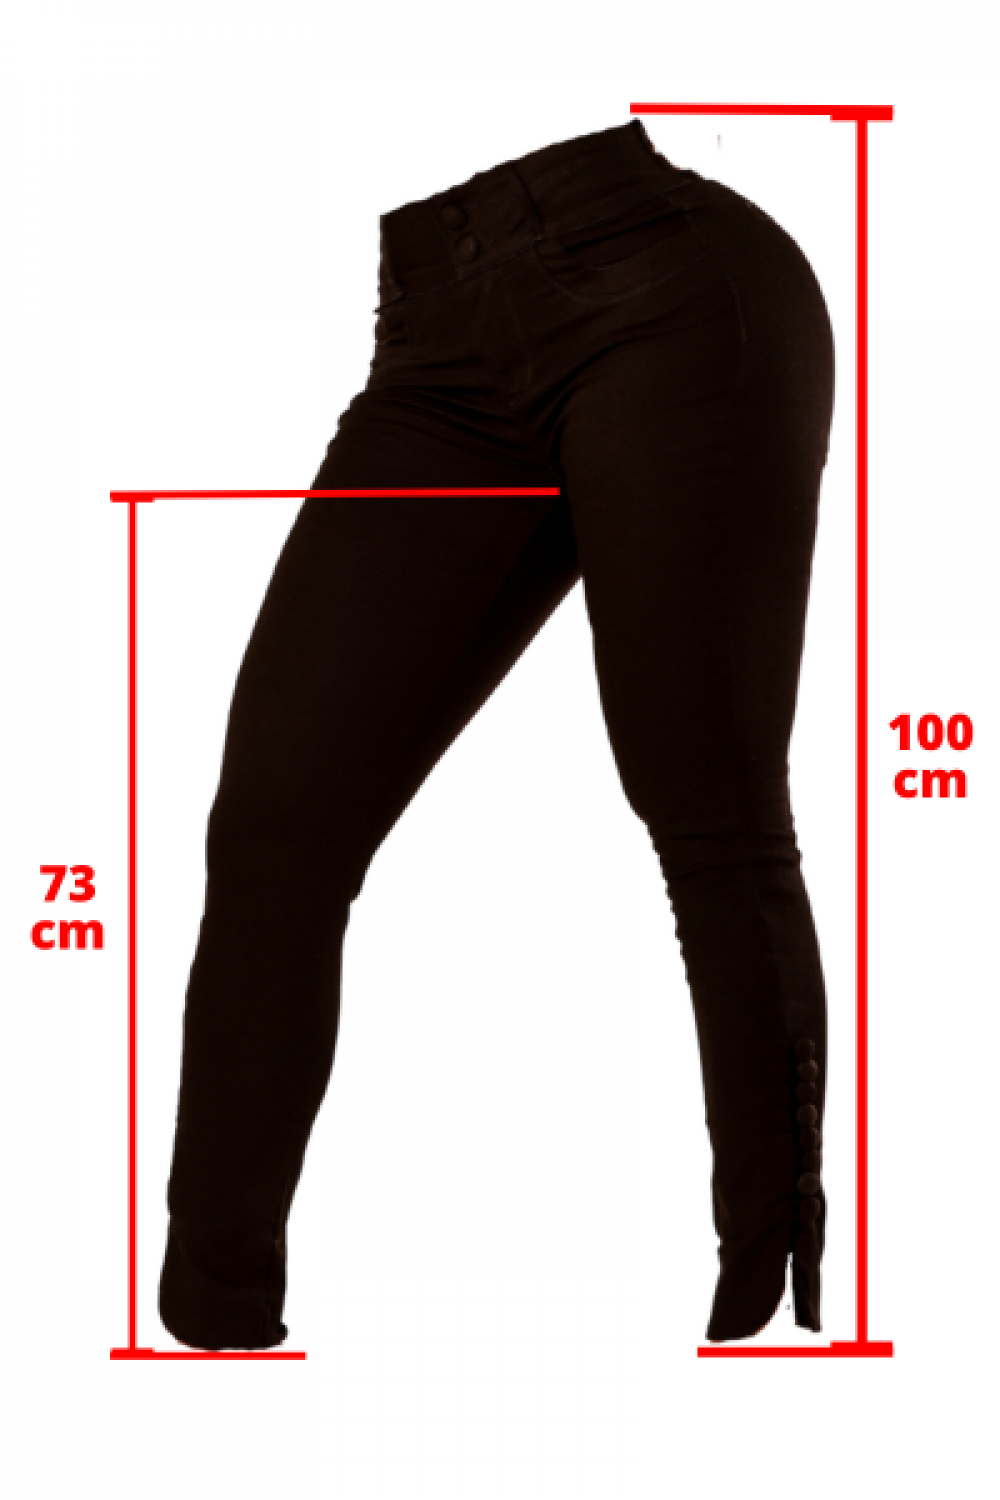 Calça jeans Premim 5% de elastano ref 05